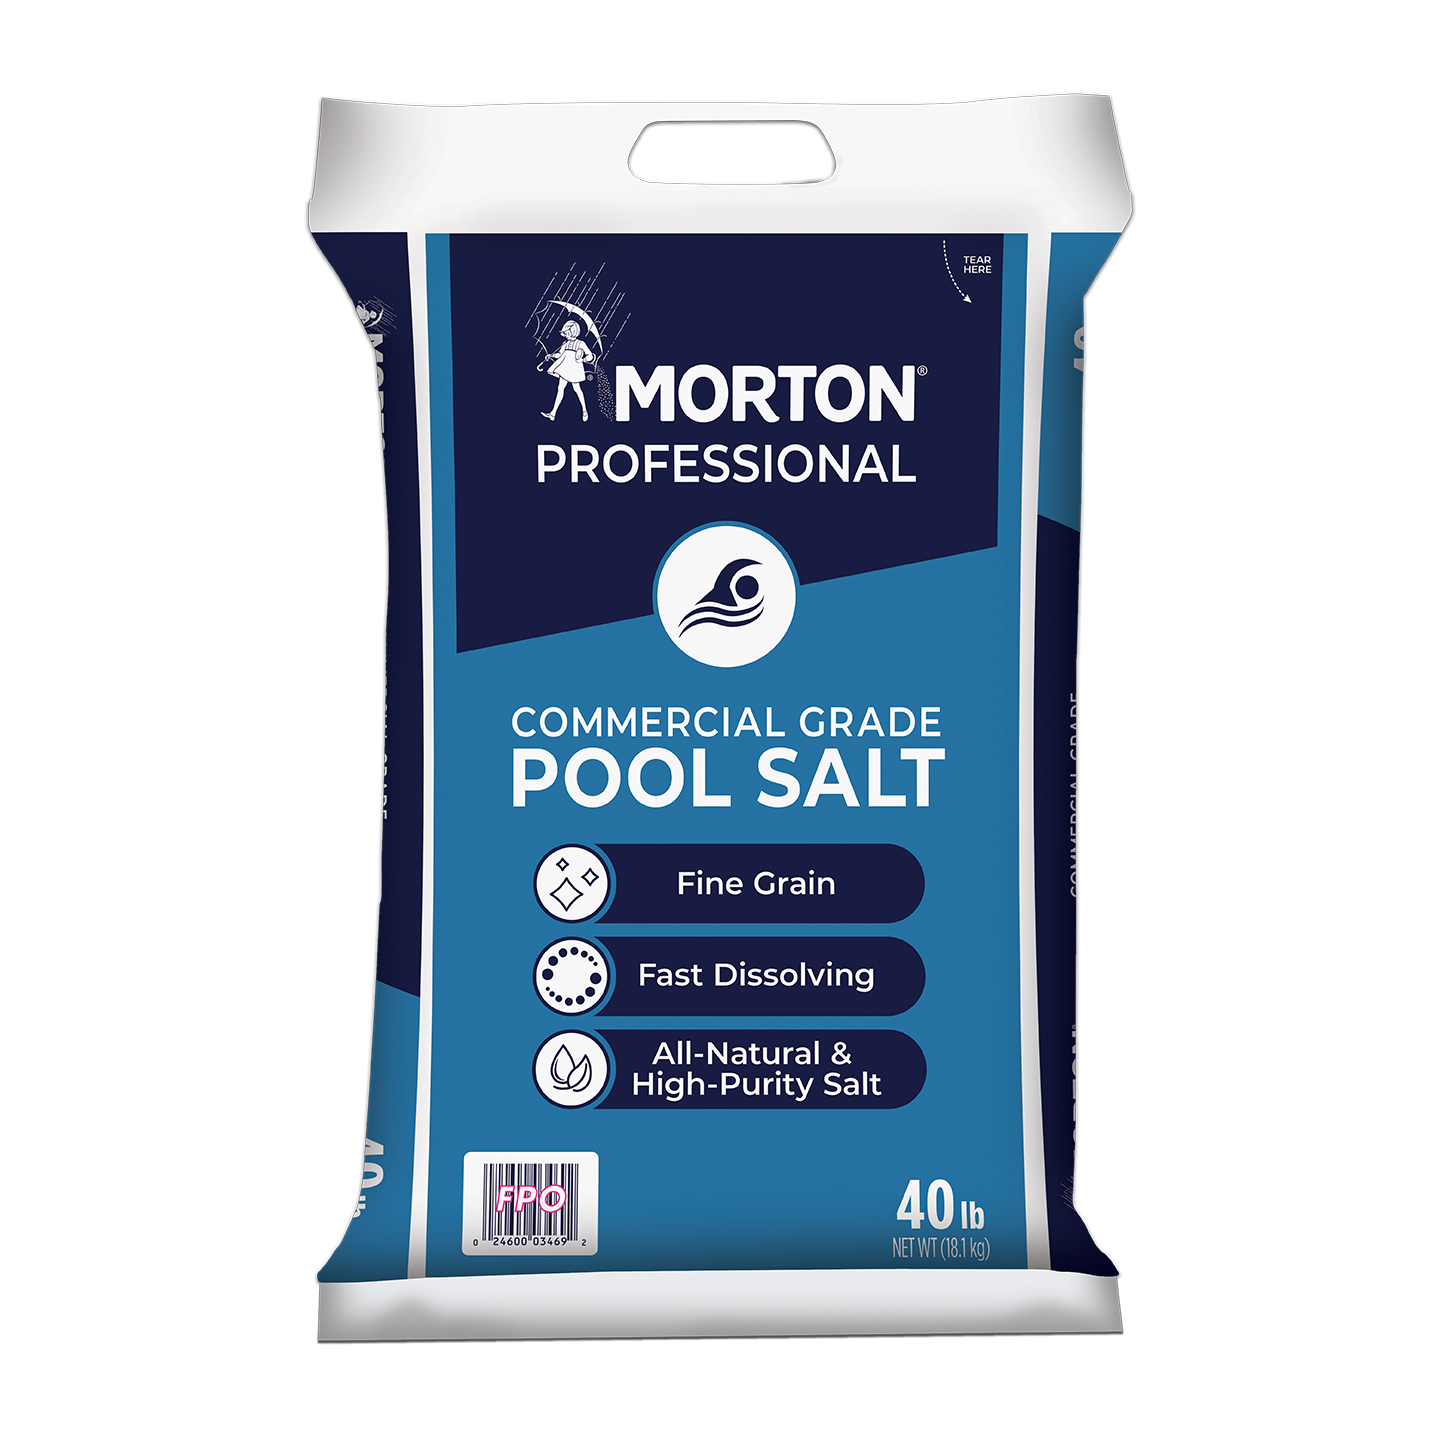 Morton Professional Commercial Grade Pool Salt - 40 lb Bag 